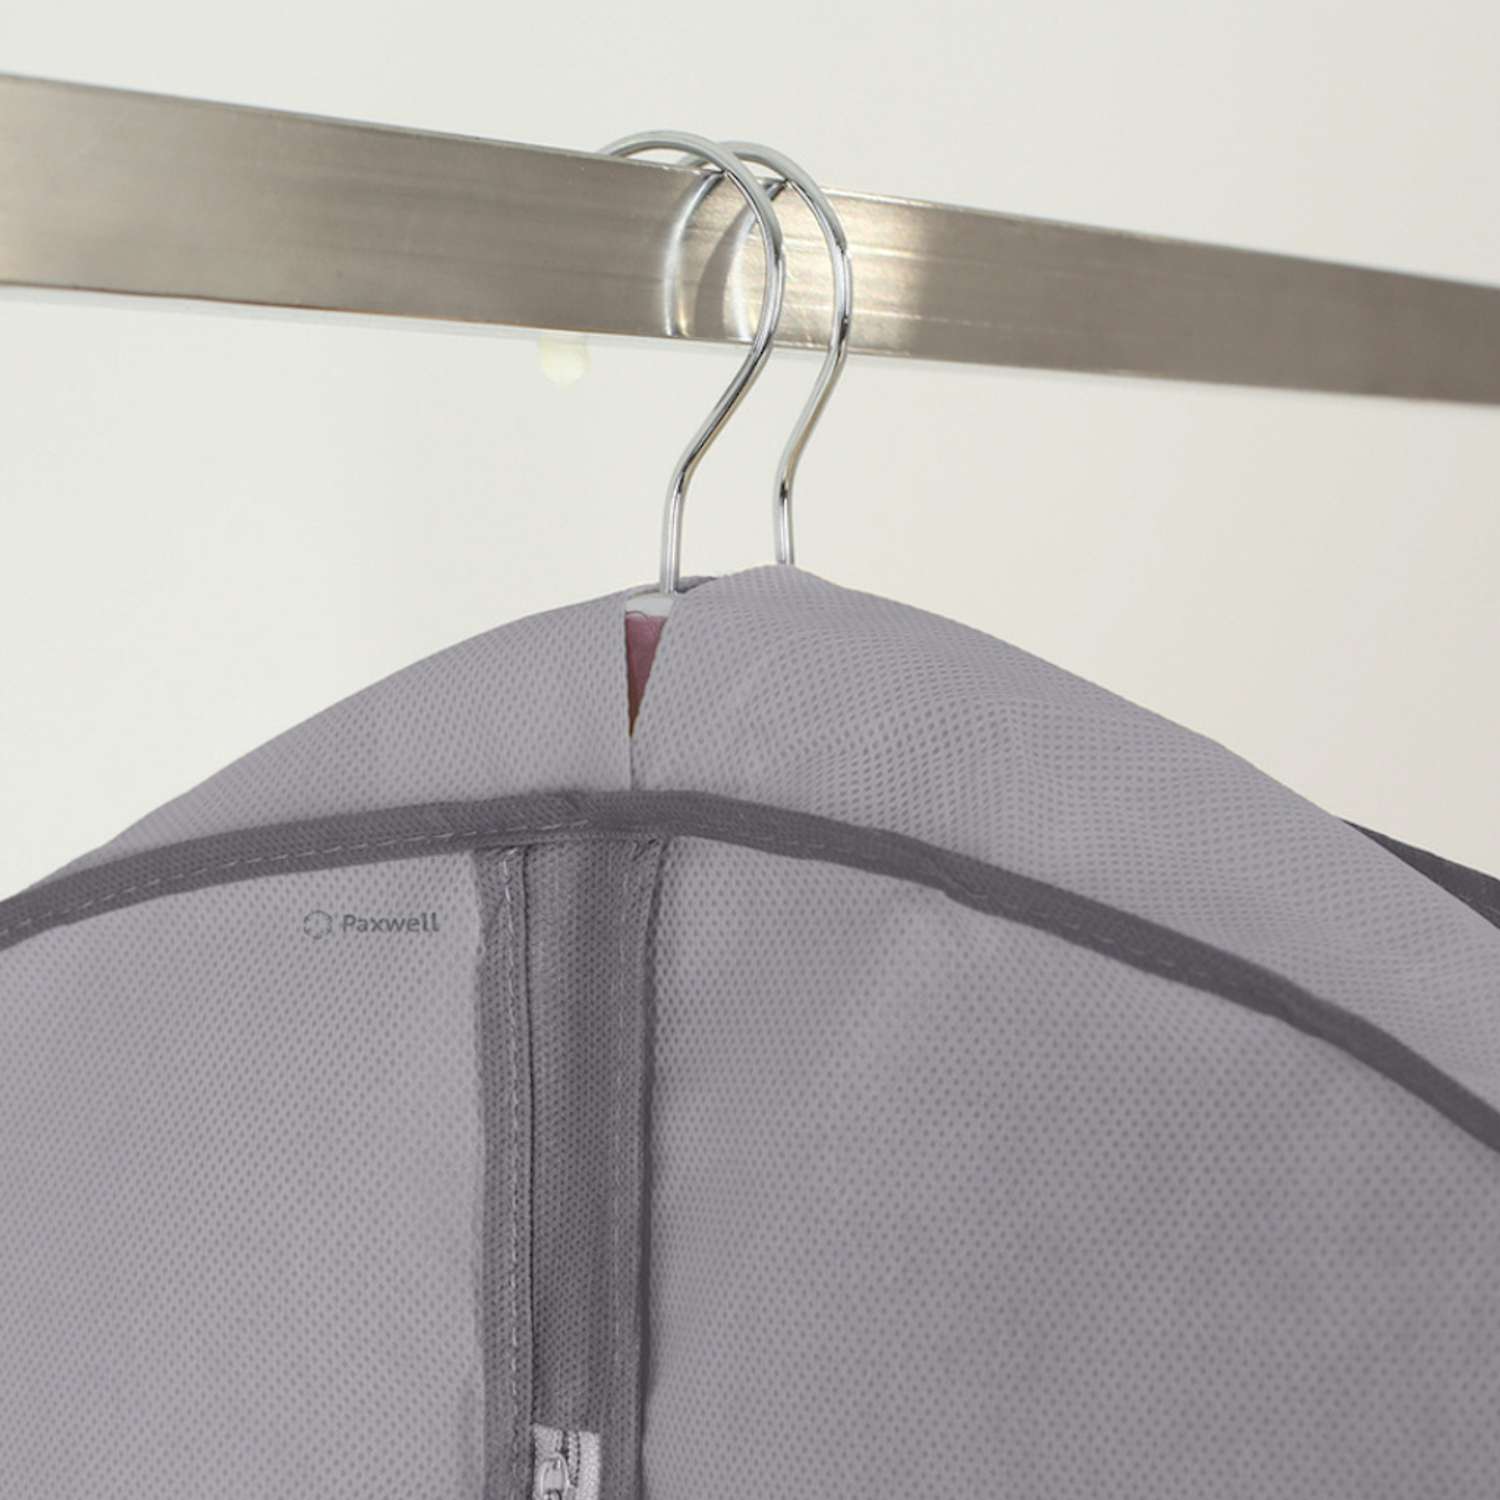 Чехол для широкой одежды Paxwell 140 см серый - фото 2